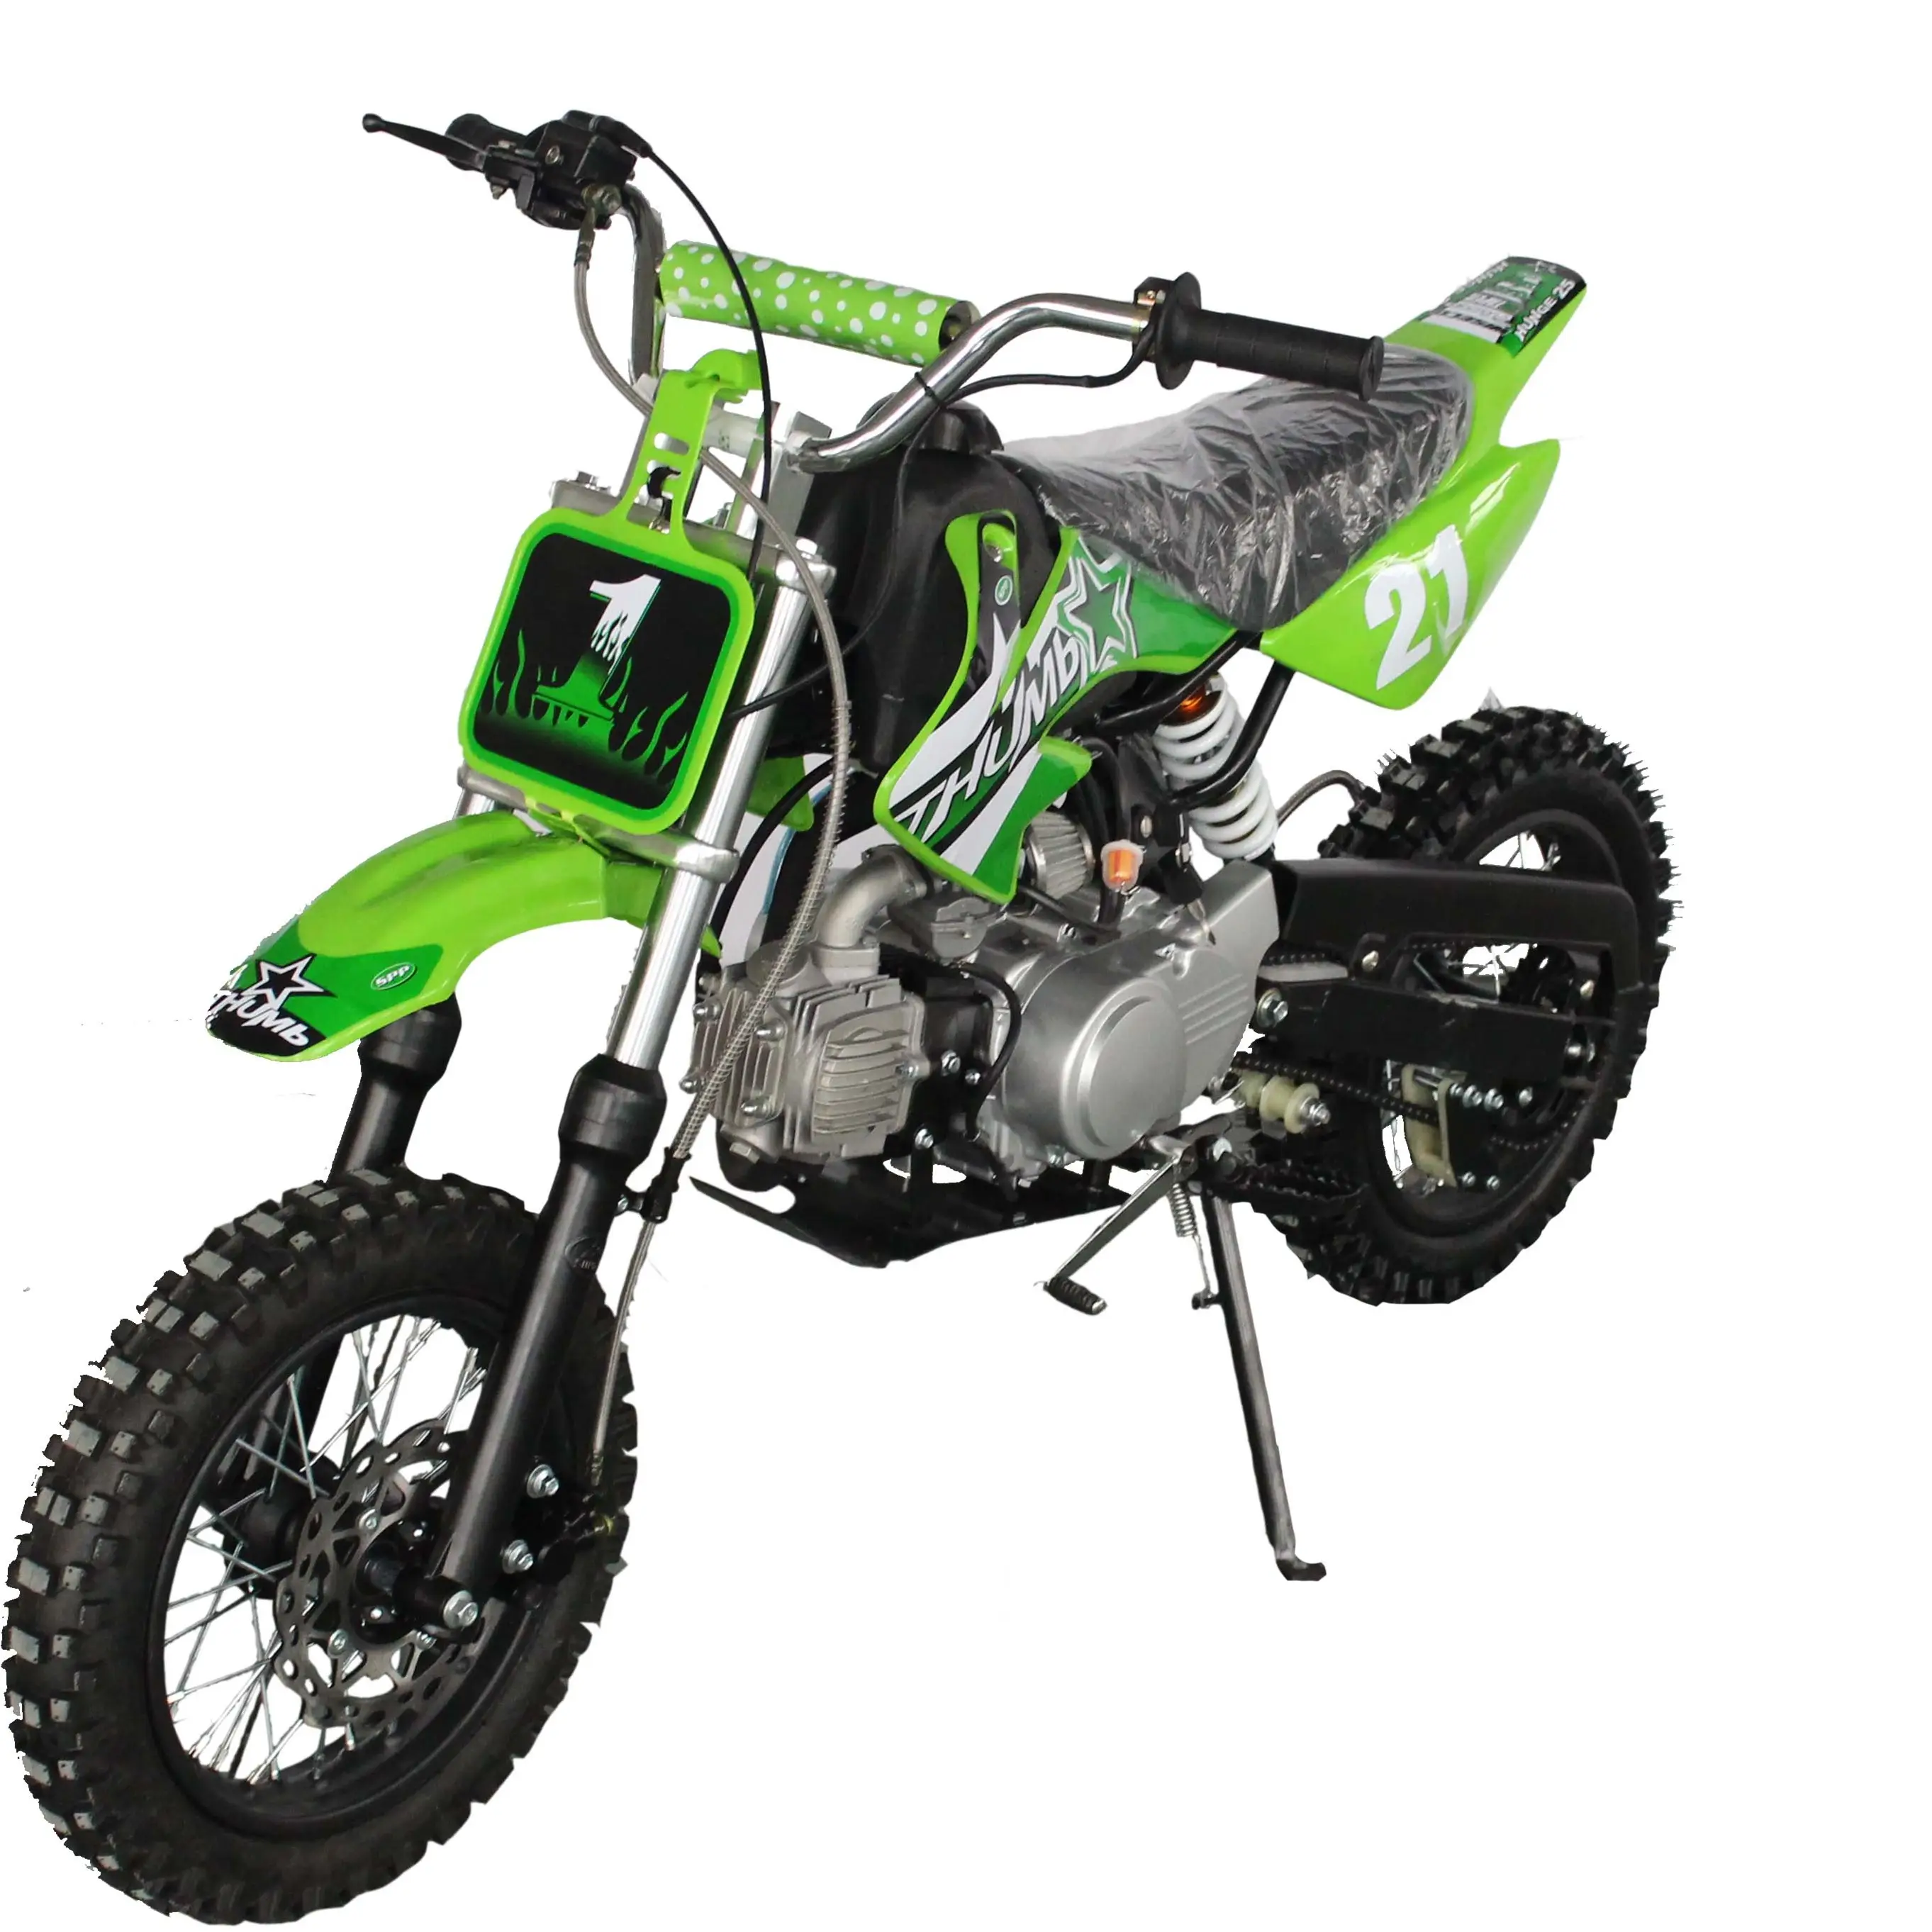 1250cc dirt bike moto da Cross country dirt bike automatica per adulti dirt bike